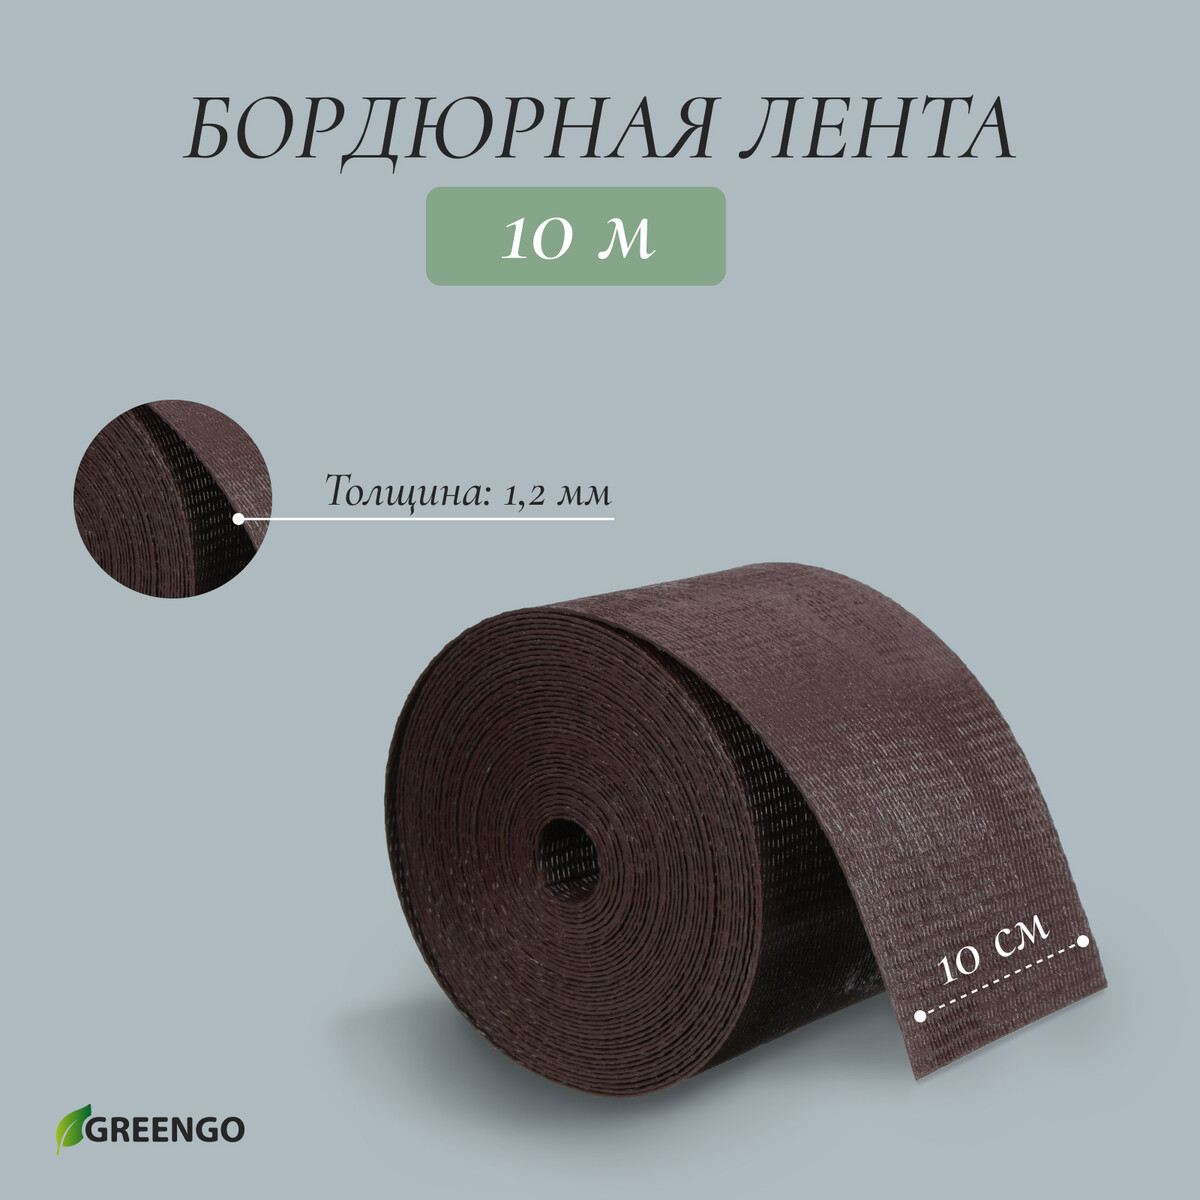 Лента бордюрная, 0.1 × 10 м, толщина 1.2 мм, пластиковая, коричневая, greengo лента бордюрная 0 2 × 9 м толщина 1 2 мм пластиковая фигурная коричневая greengo